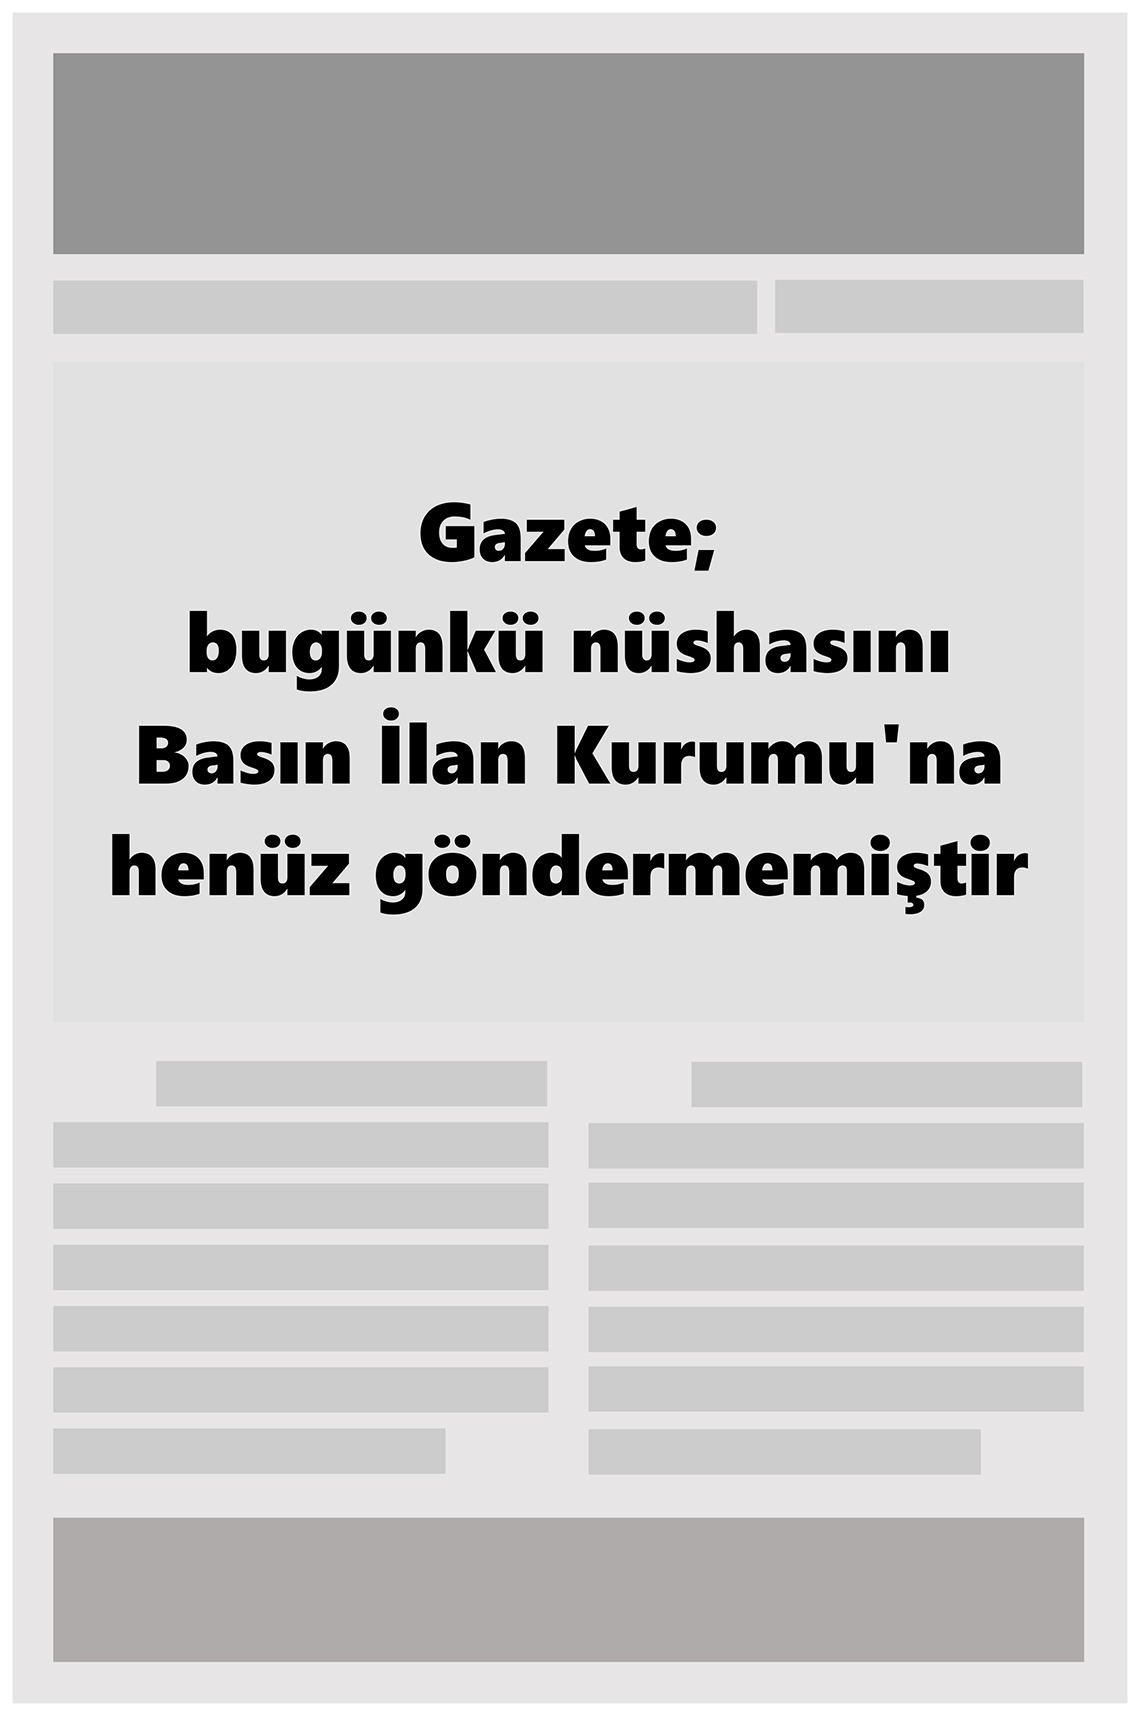 Zafer Gazete Manşeti